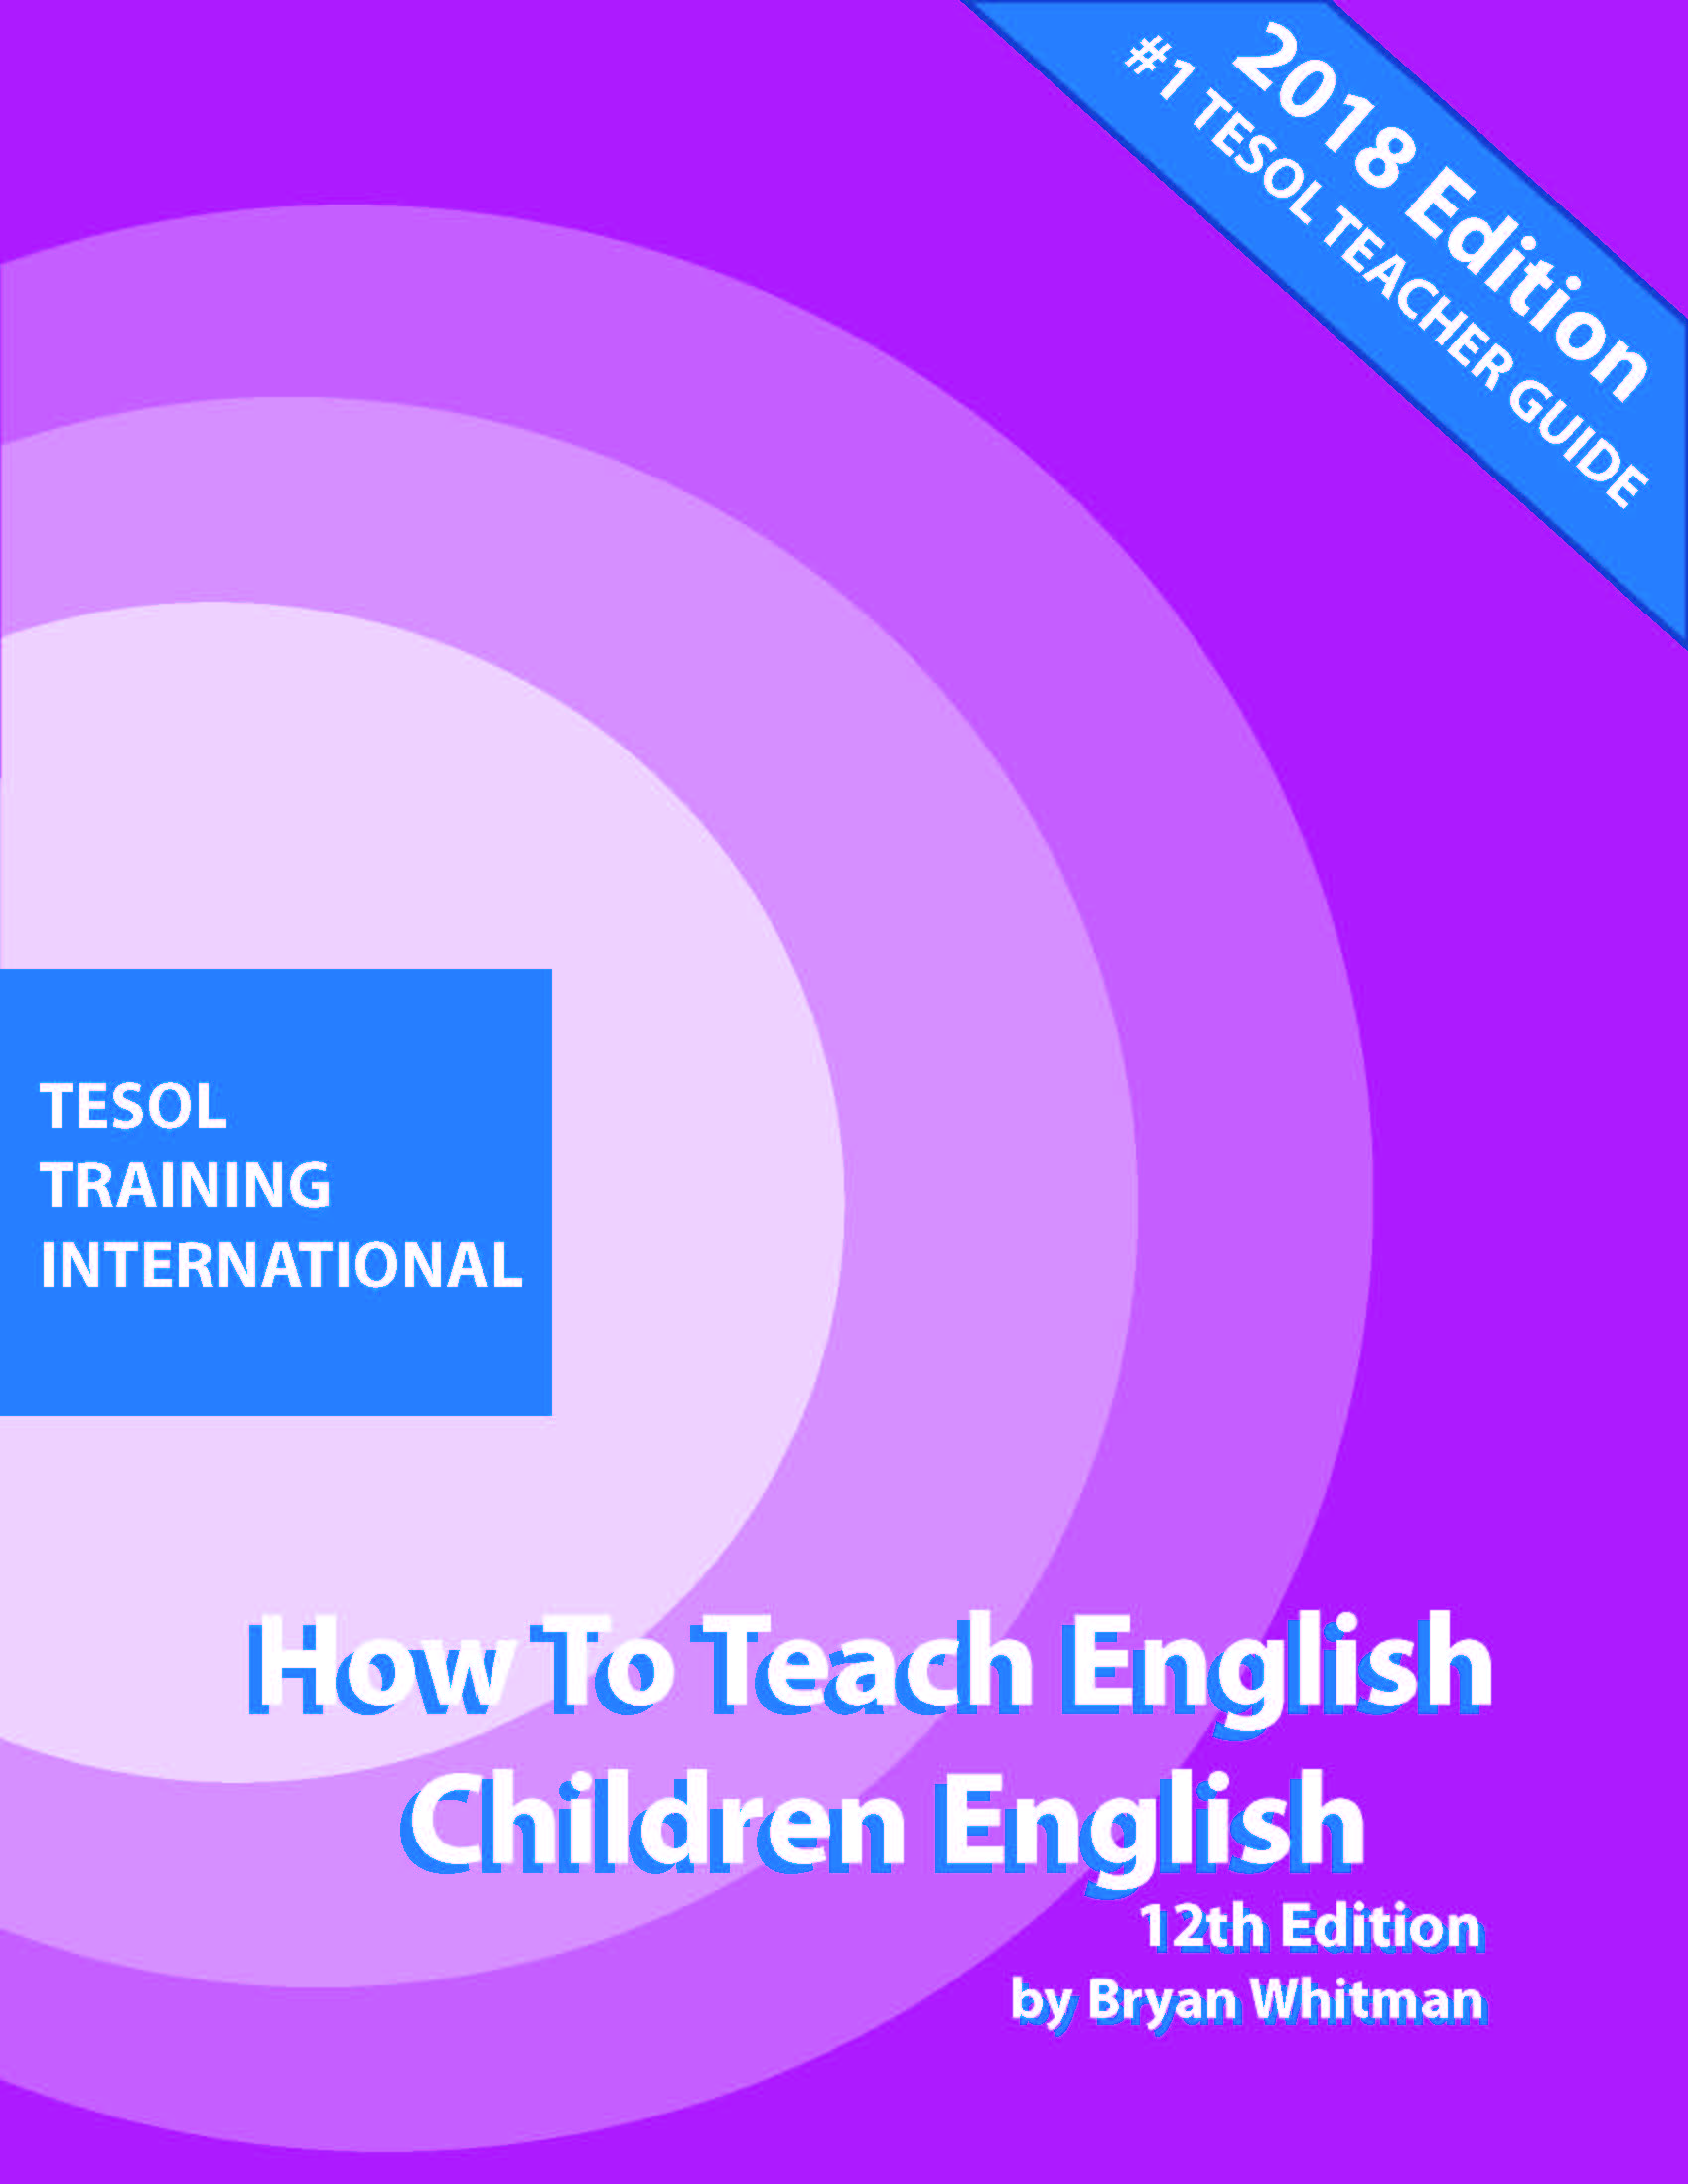 Teaching English to Children